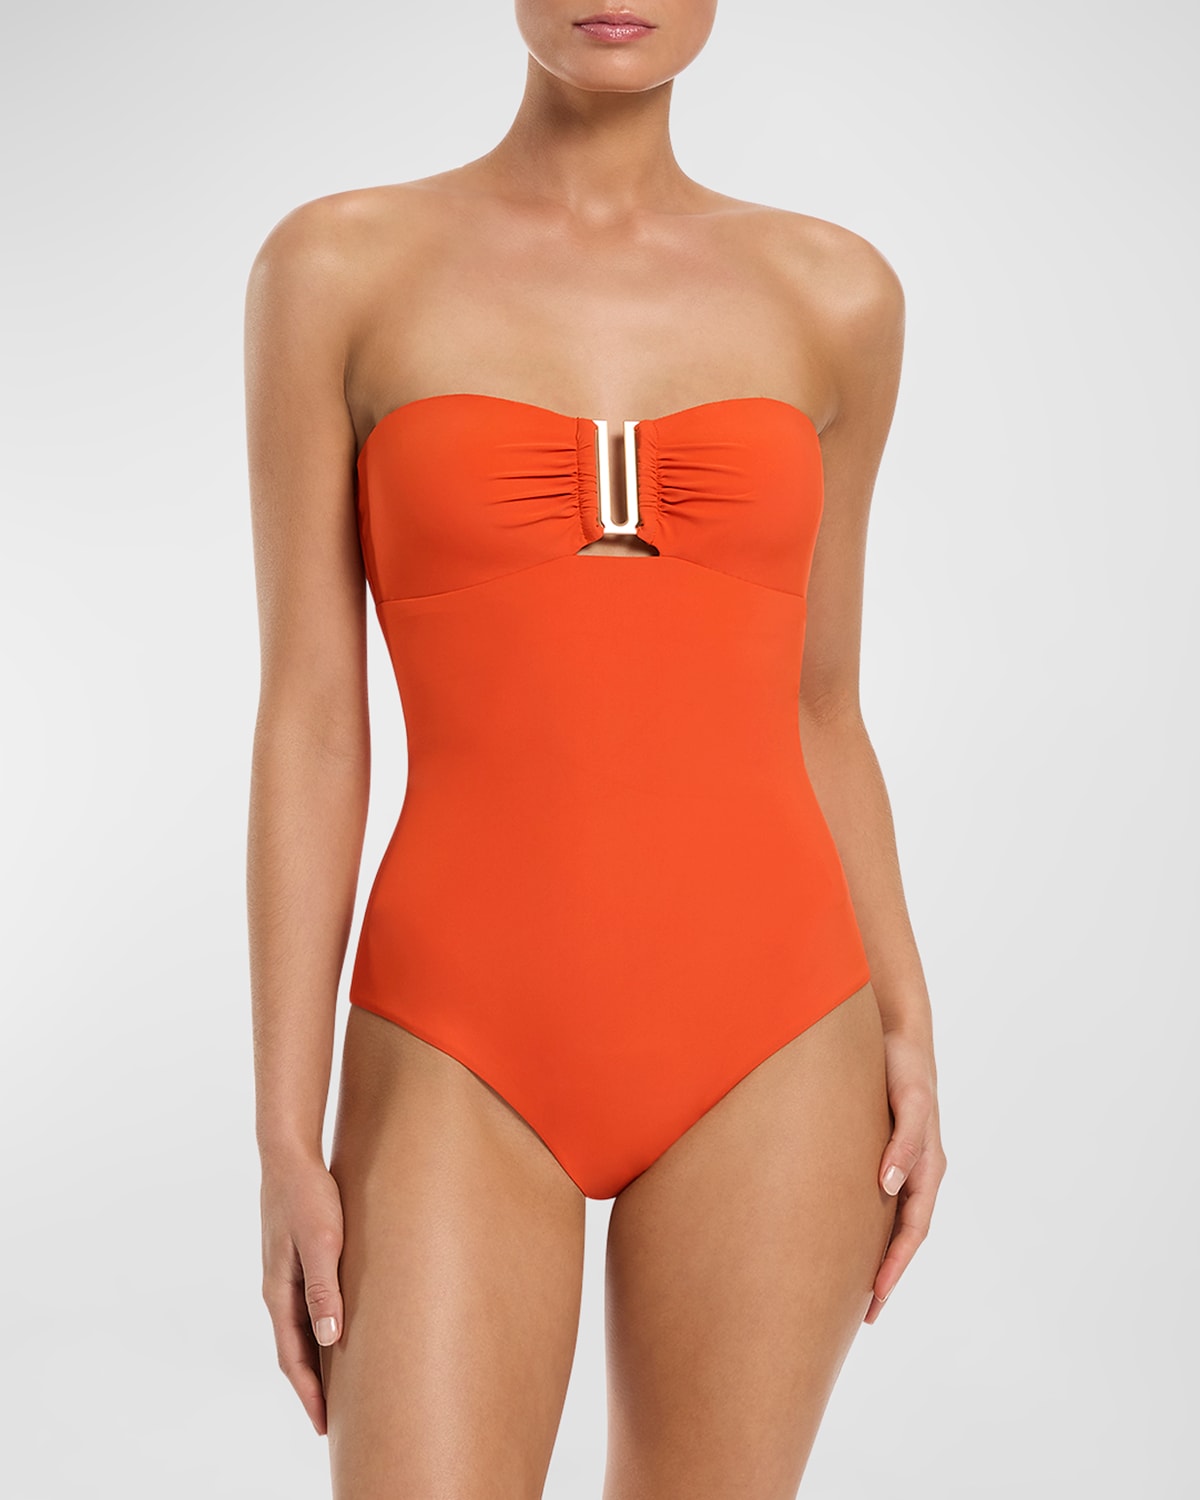 Jets Australia Jetset Bandeau One-piece Swimsuit In Orange